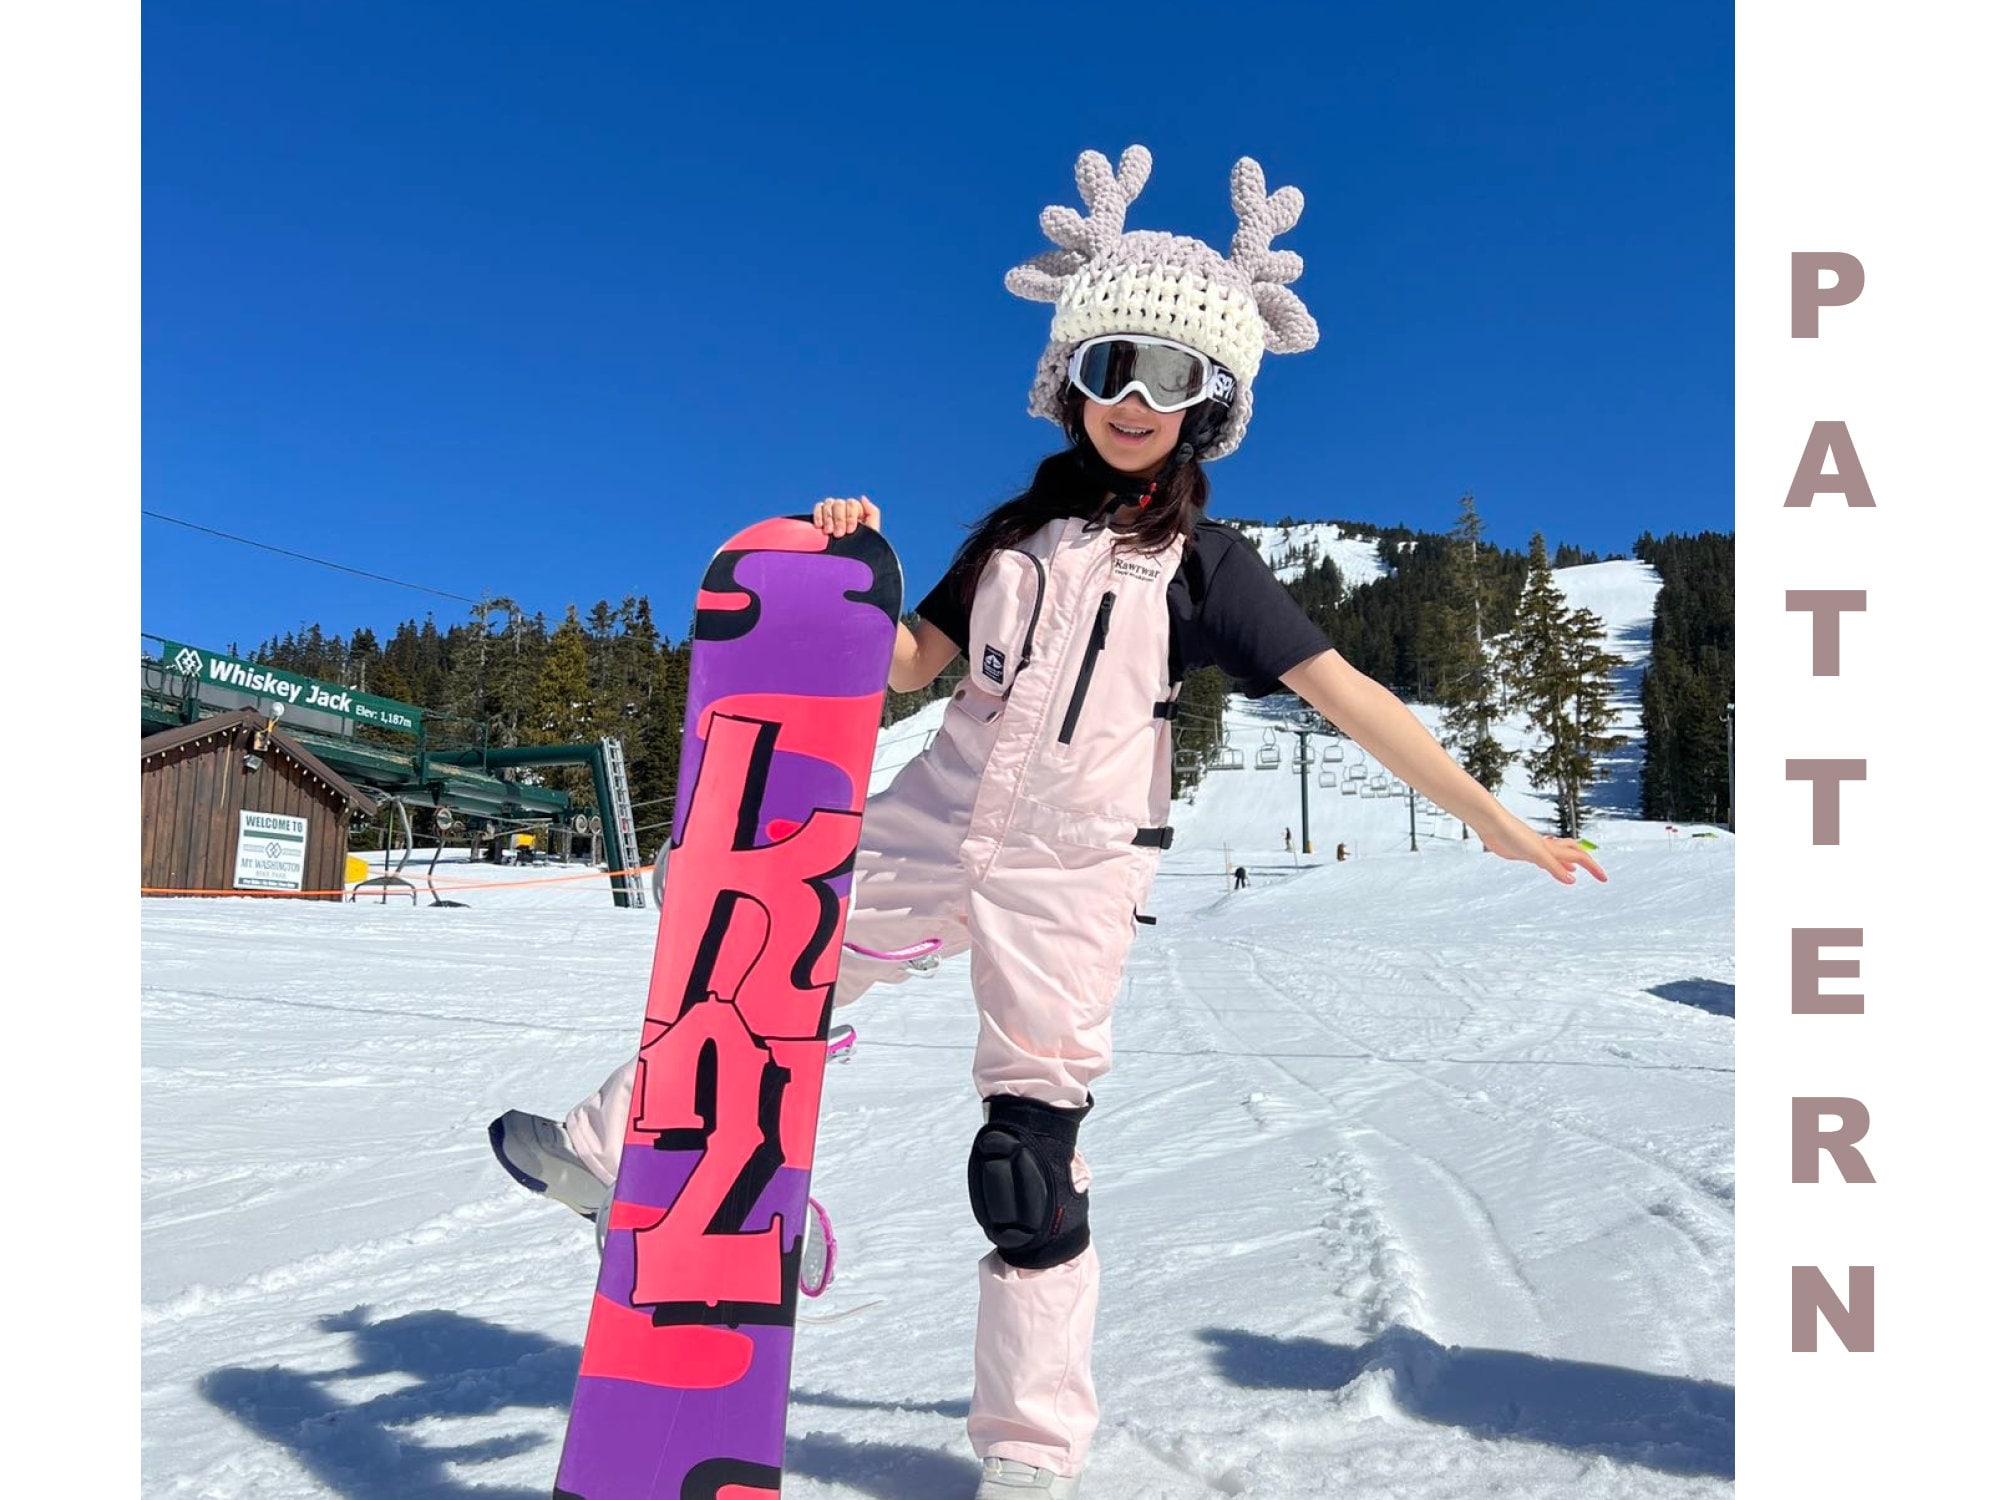 Ski Costume 